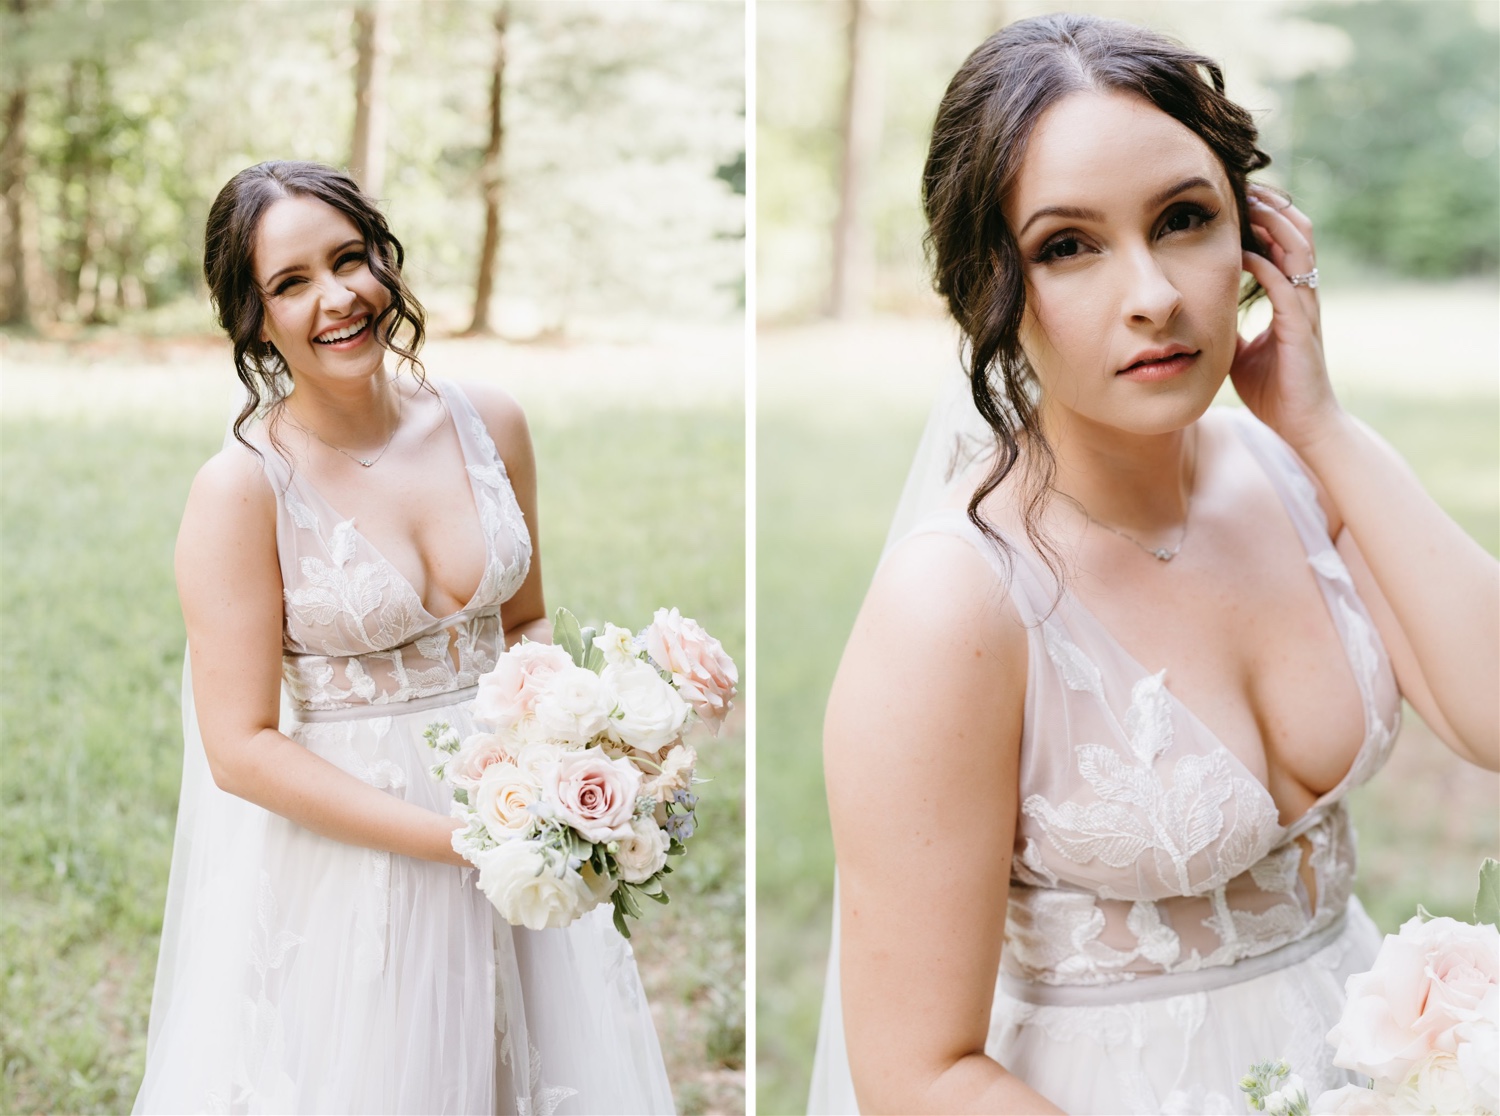 ivy rose barn bride portrait smiling wedding dress florals